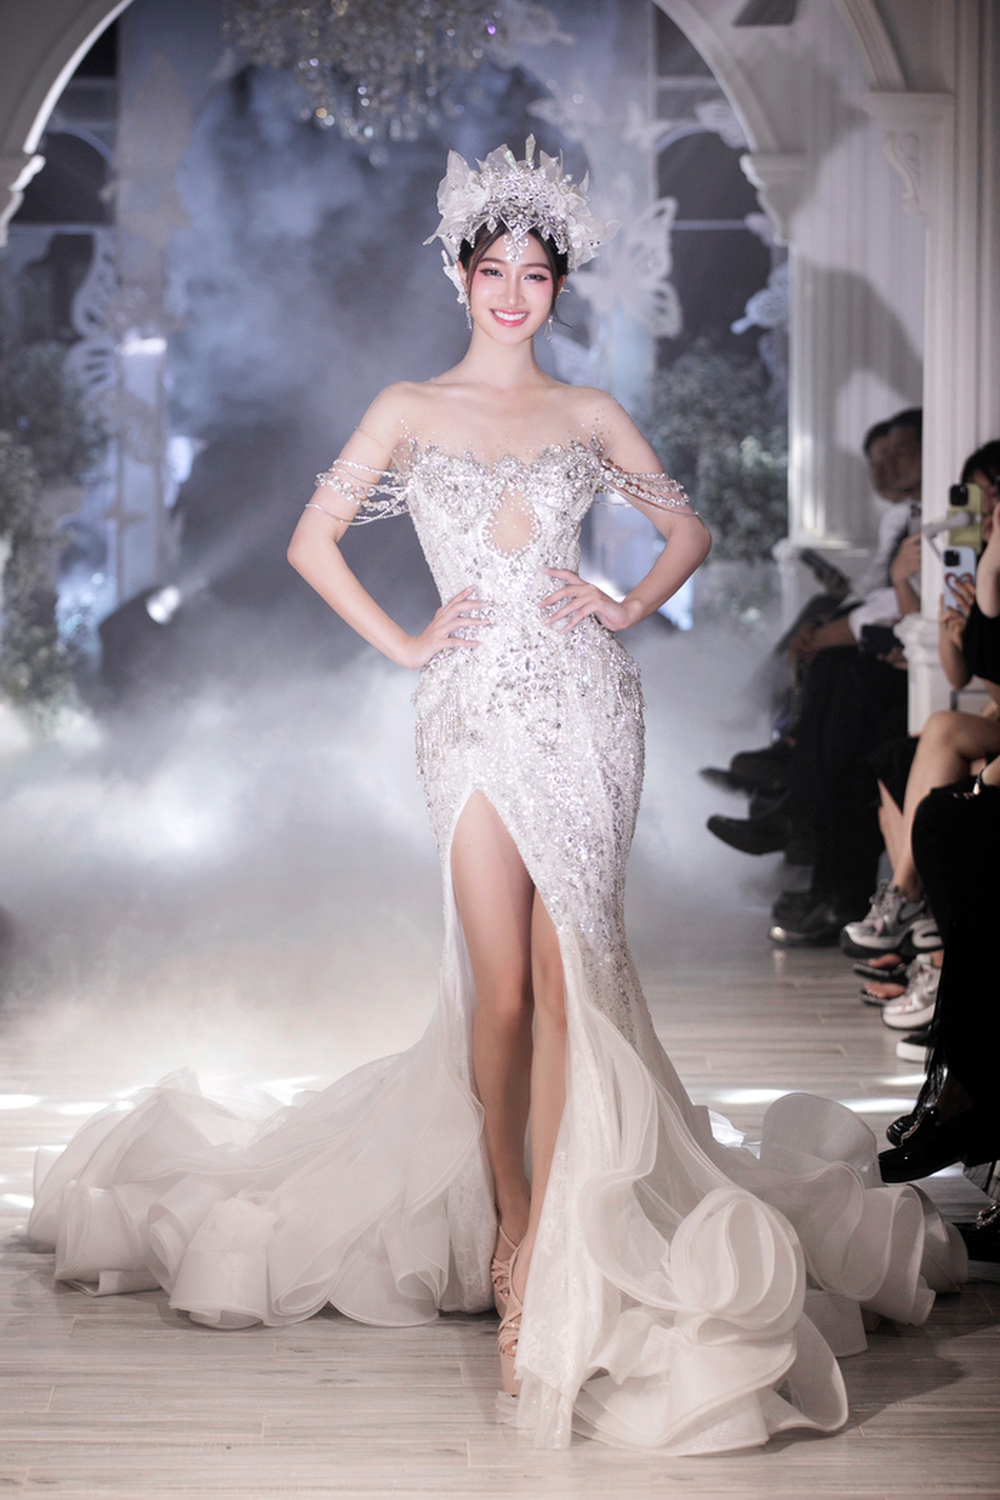 Hoa hậu Mai Phương diện đầm dài 3,5 mét nặng 12 kg - Ảnh 3.